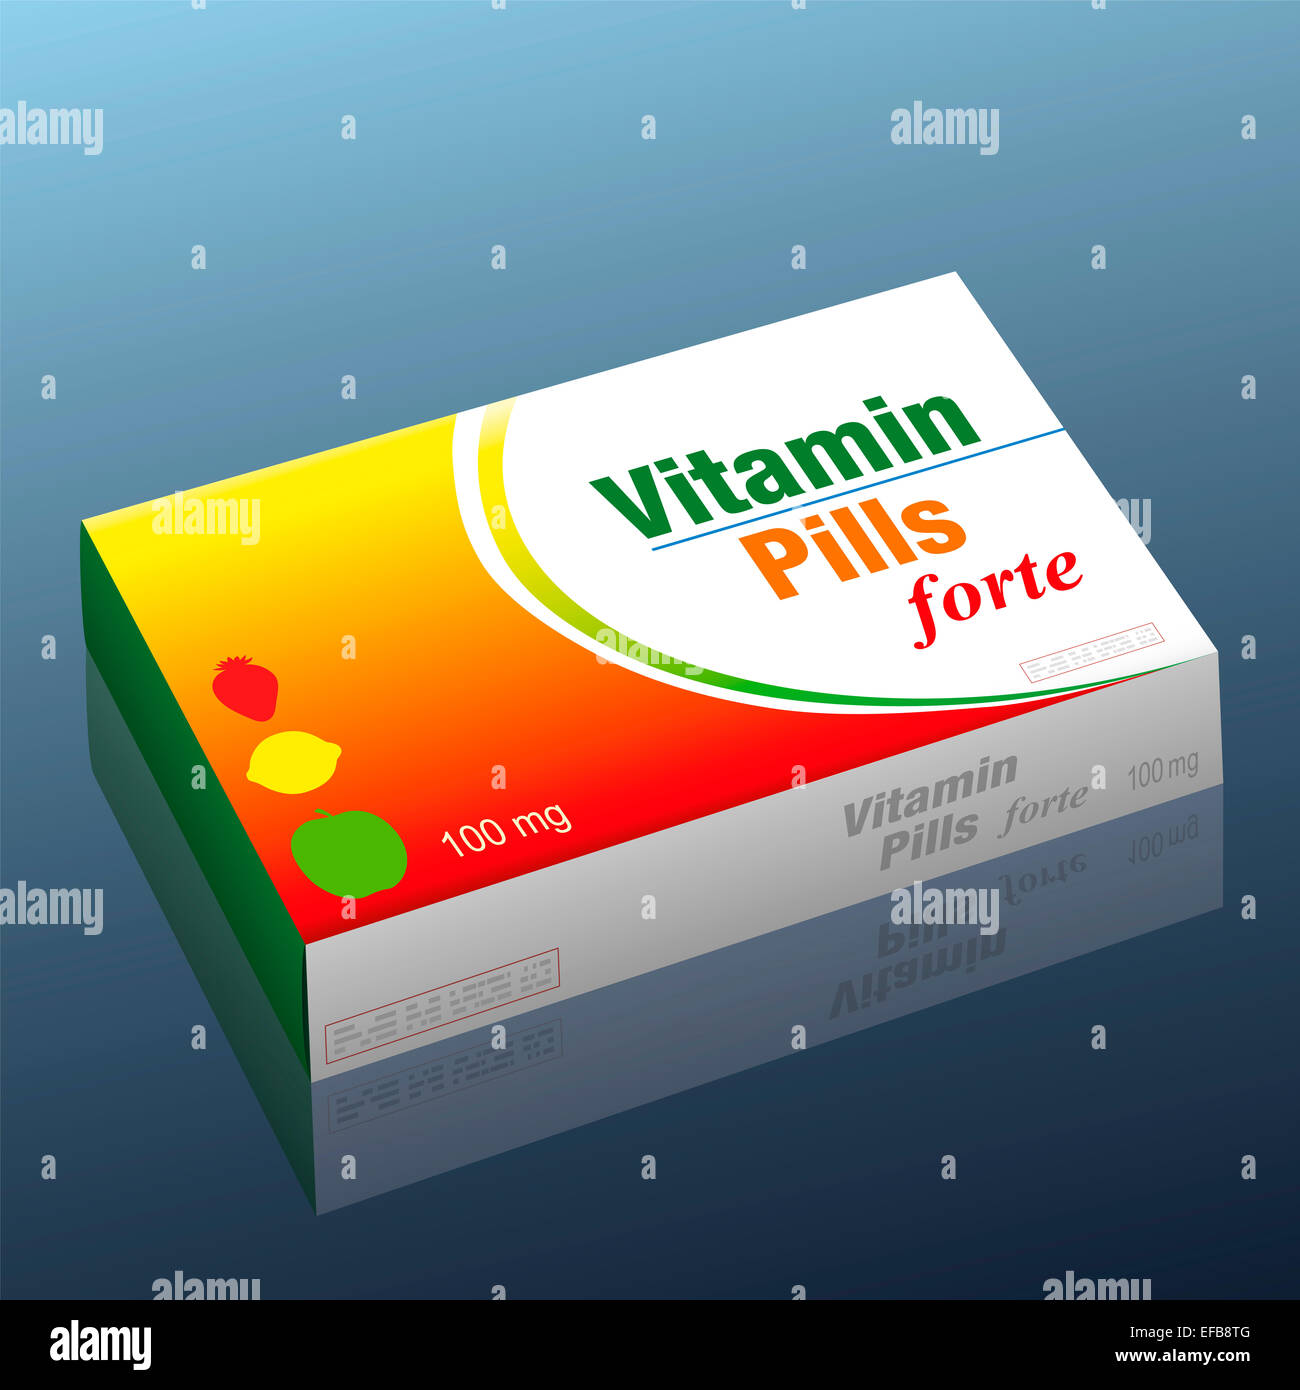 Pills denominato vitamina pillole forte con una fragola, limone e di un Apple come un logo del marchio sulla confezione, un medico di prodotto falso. Foto Stock